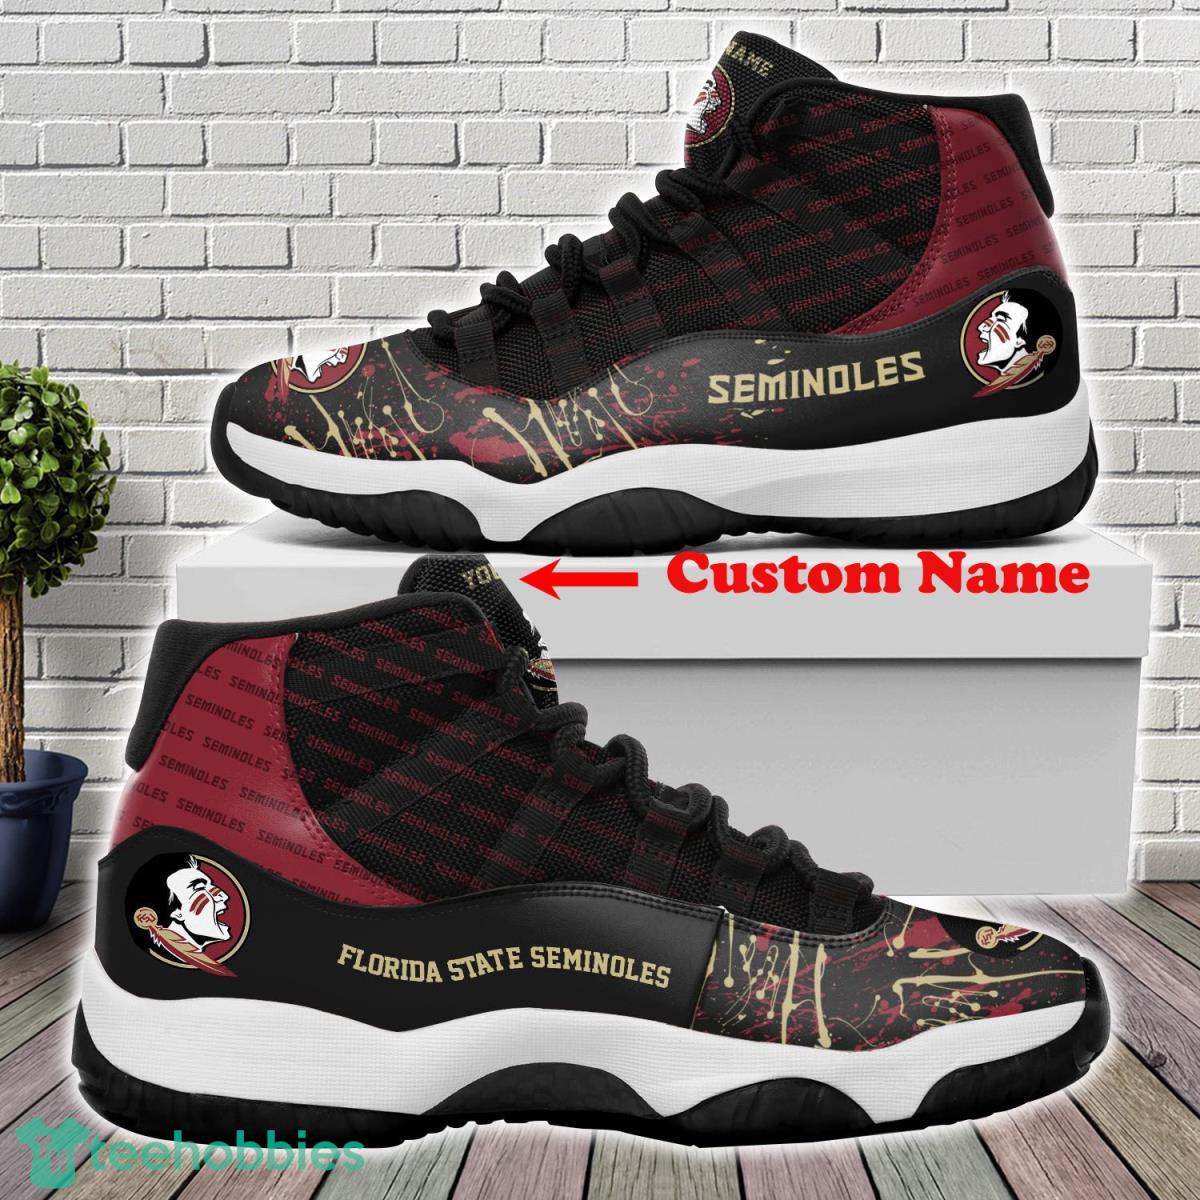 Florida State Seminoles Custom Name Air Jordan 11 Sneakers For Fans Product Photo 1